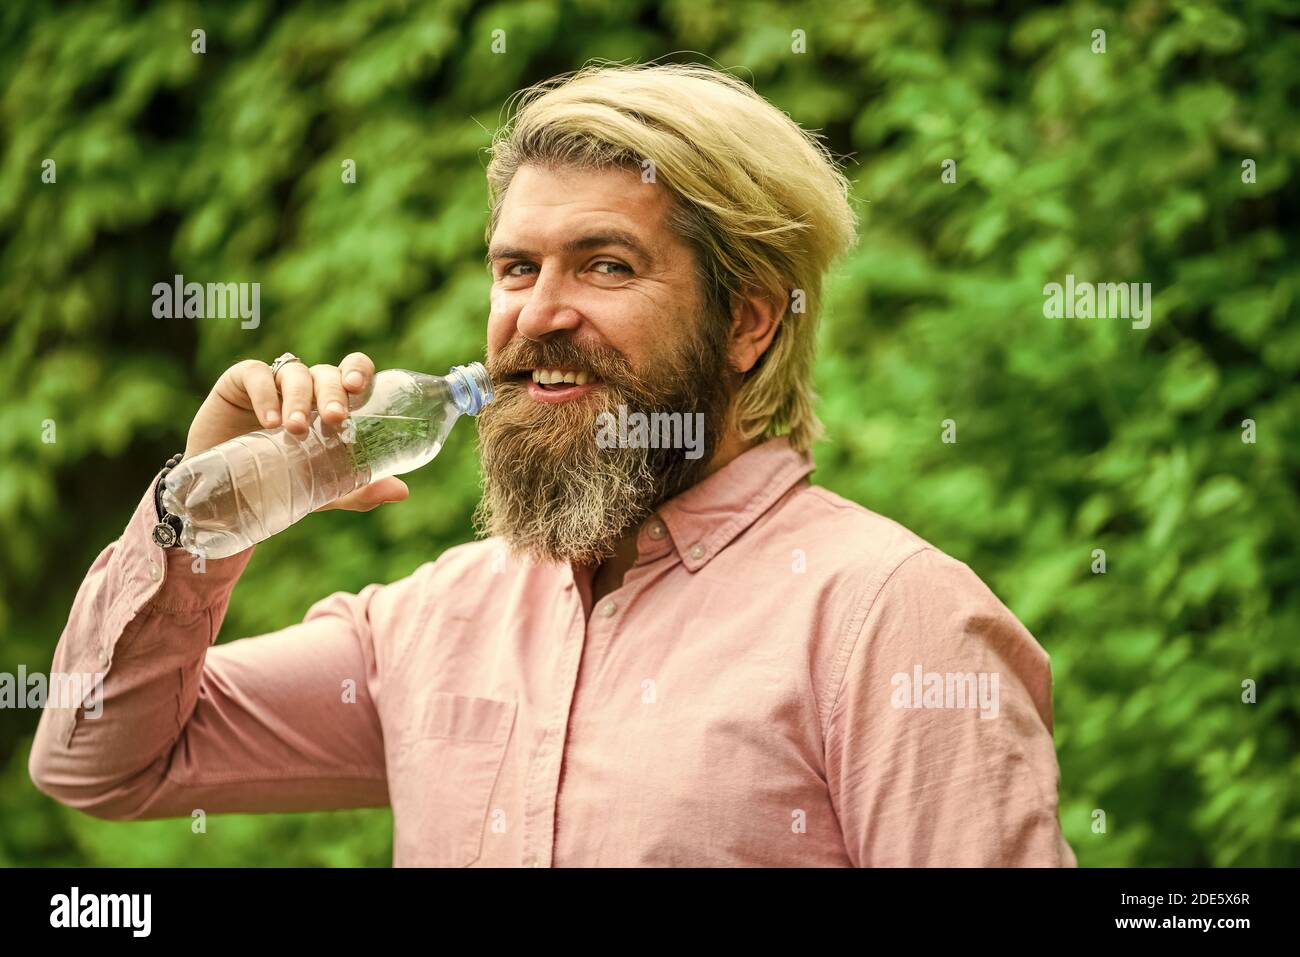 il faut boire un verre. un homme brutal boit de l'eau. un homme barbu tient une bouteille d'eau en plastique. il a soif. buvez un peu d'eau en marchant dans le parc. rafraîchissez-vous. Maintenir l'équilibre de l'eau dans le corps. Banque D'Images